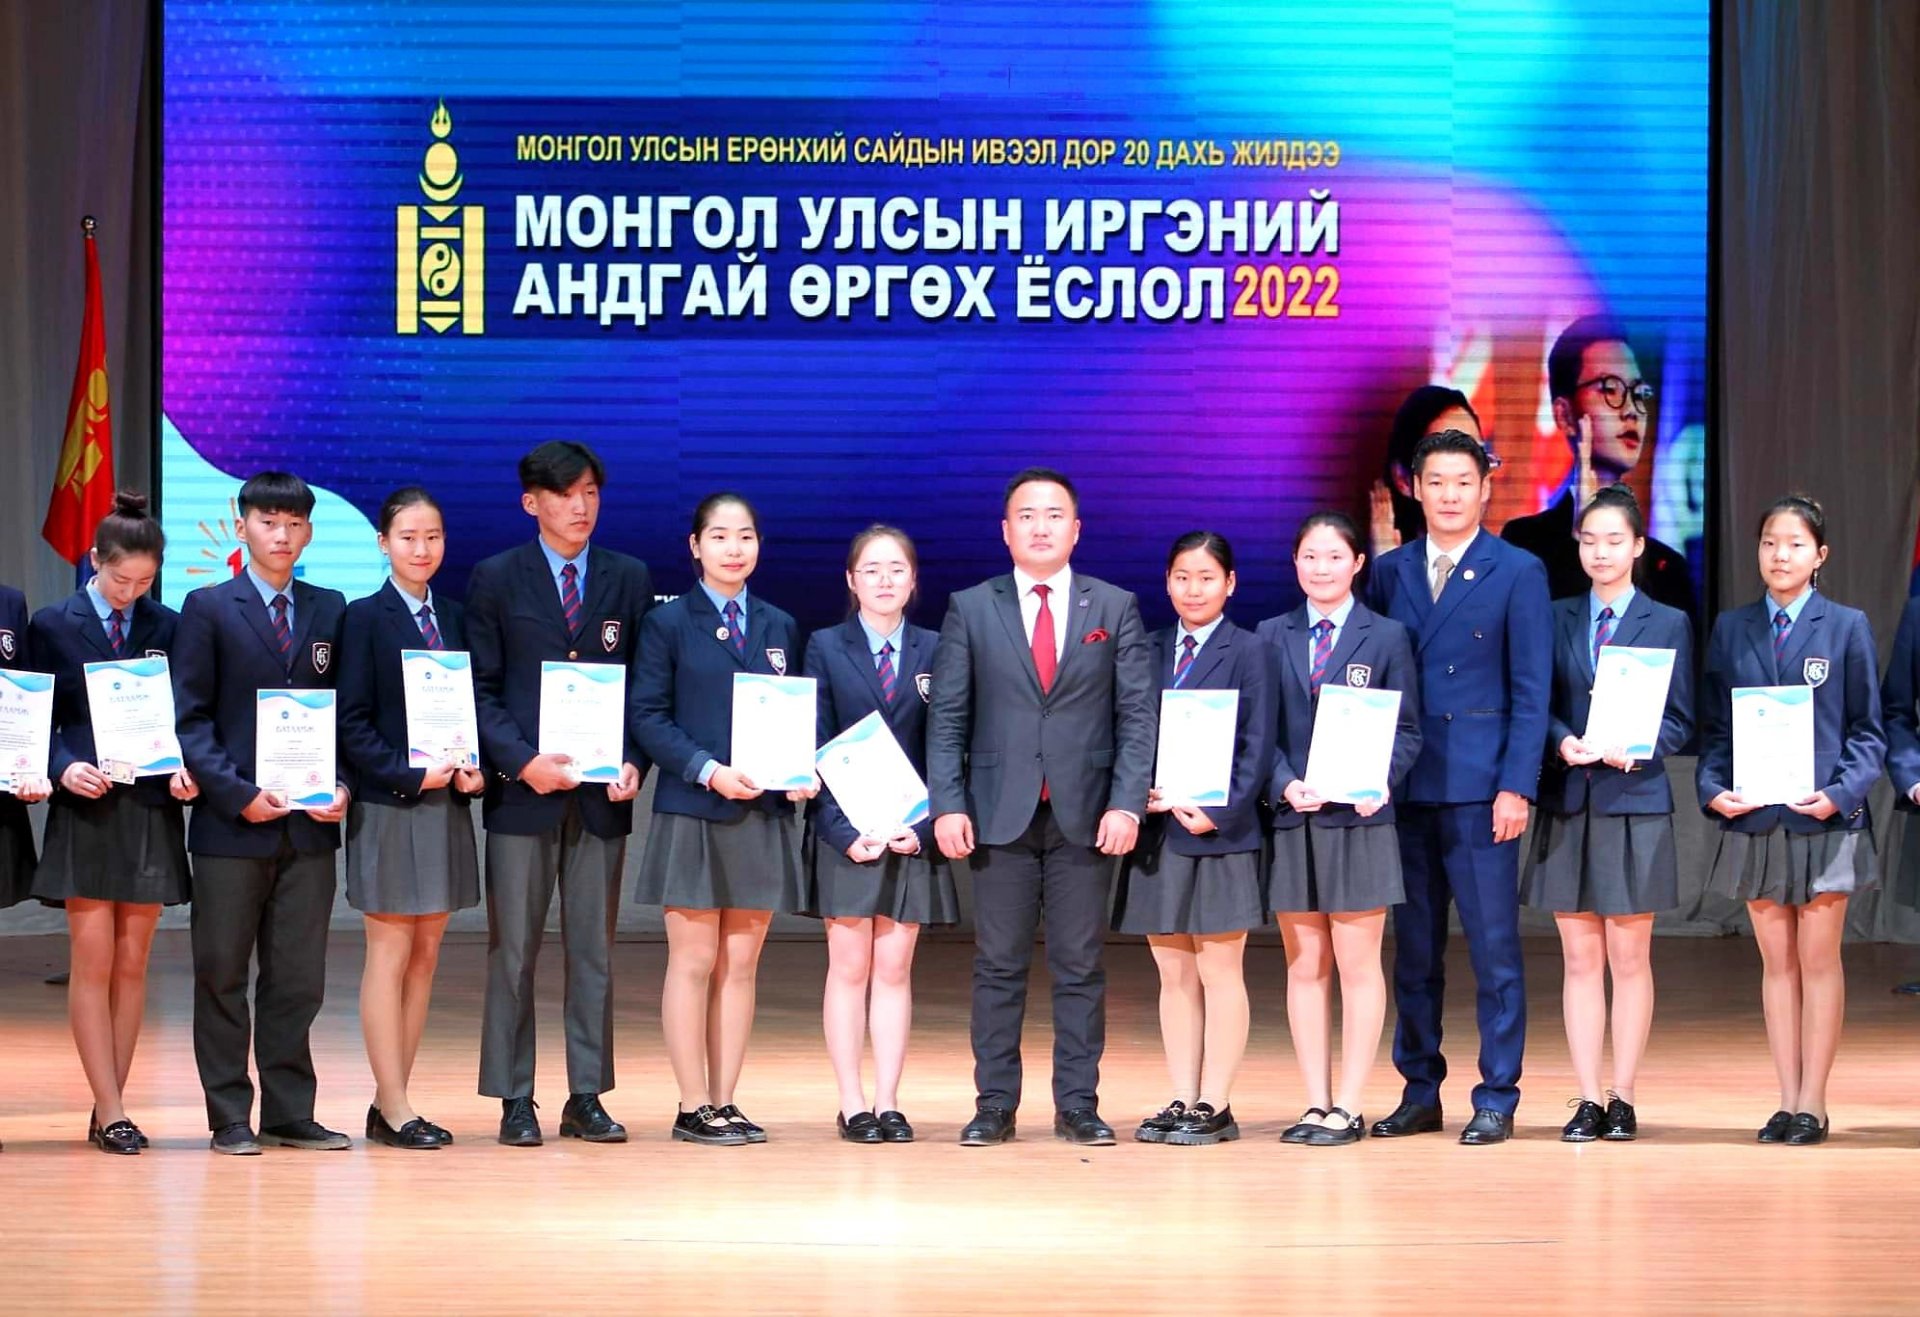 “Монгол Улсын иргэний андгай өргөх ёслол 2022”-ын үйл ажиллагаа